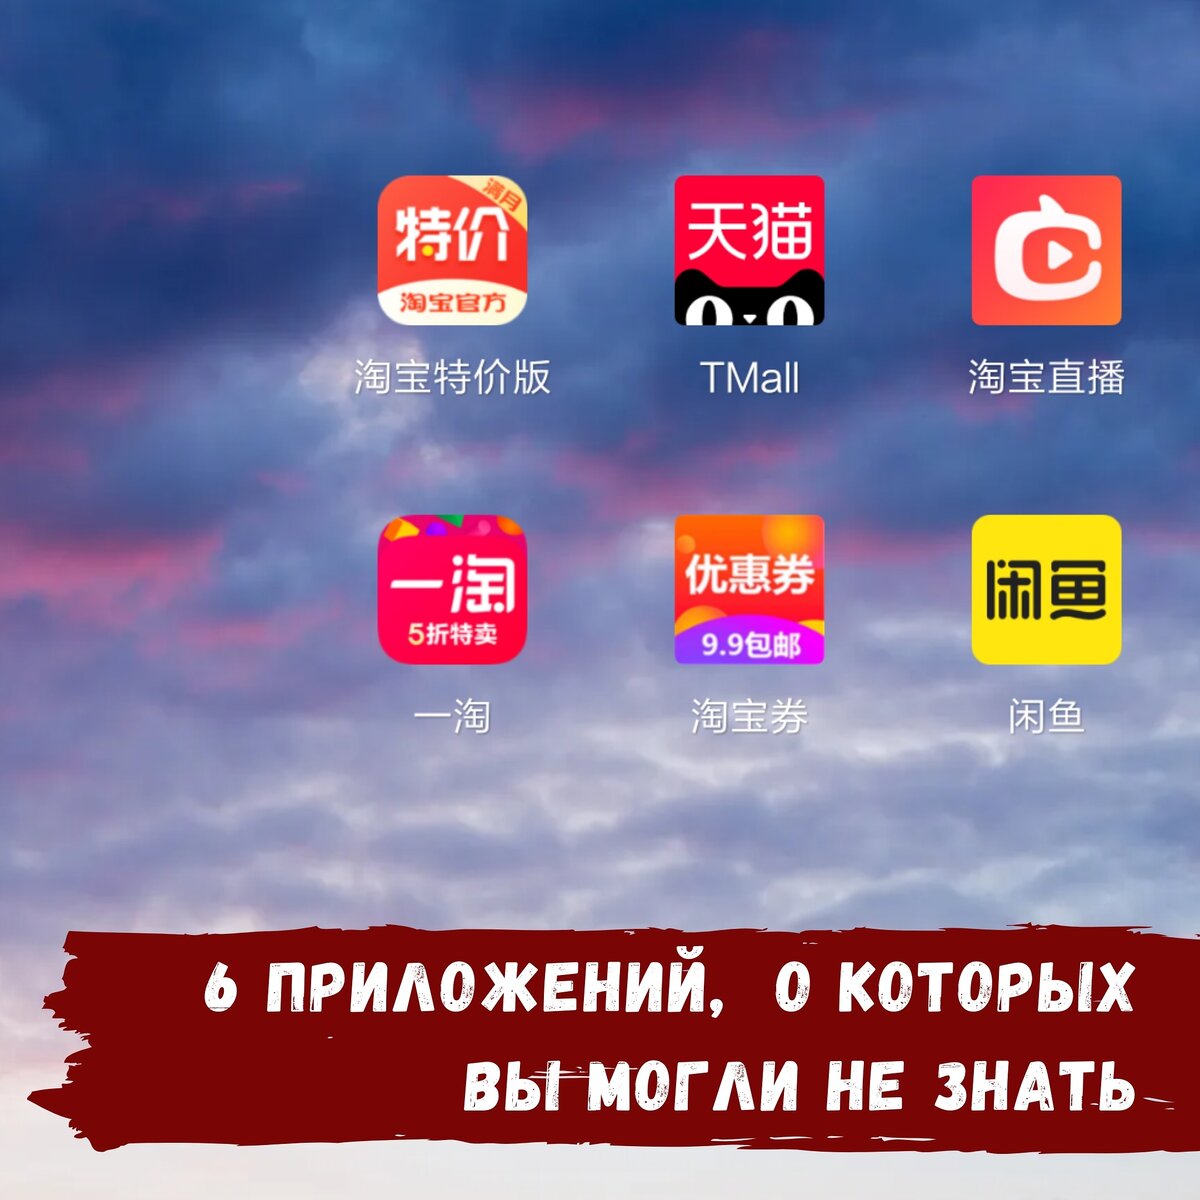 Приложение таобао. Китайское приложение Taobao. Мобильное приложение Таобао. Индекс в приложении Таобао.